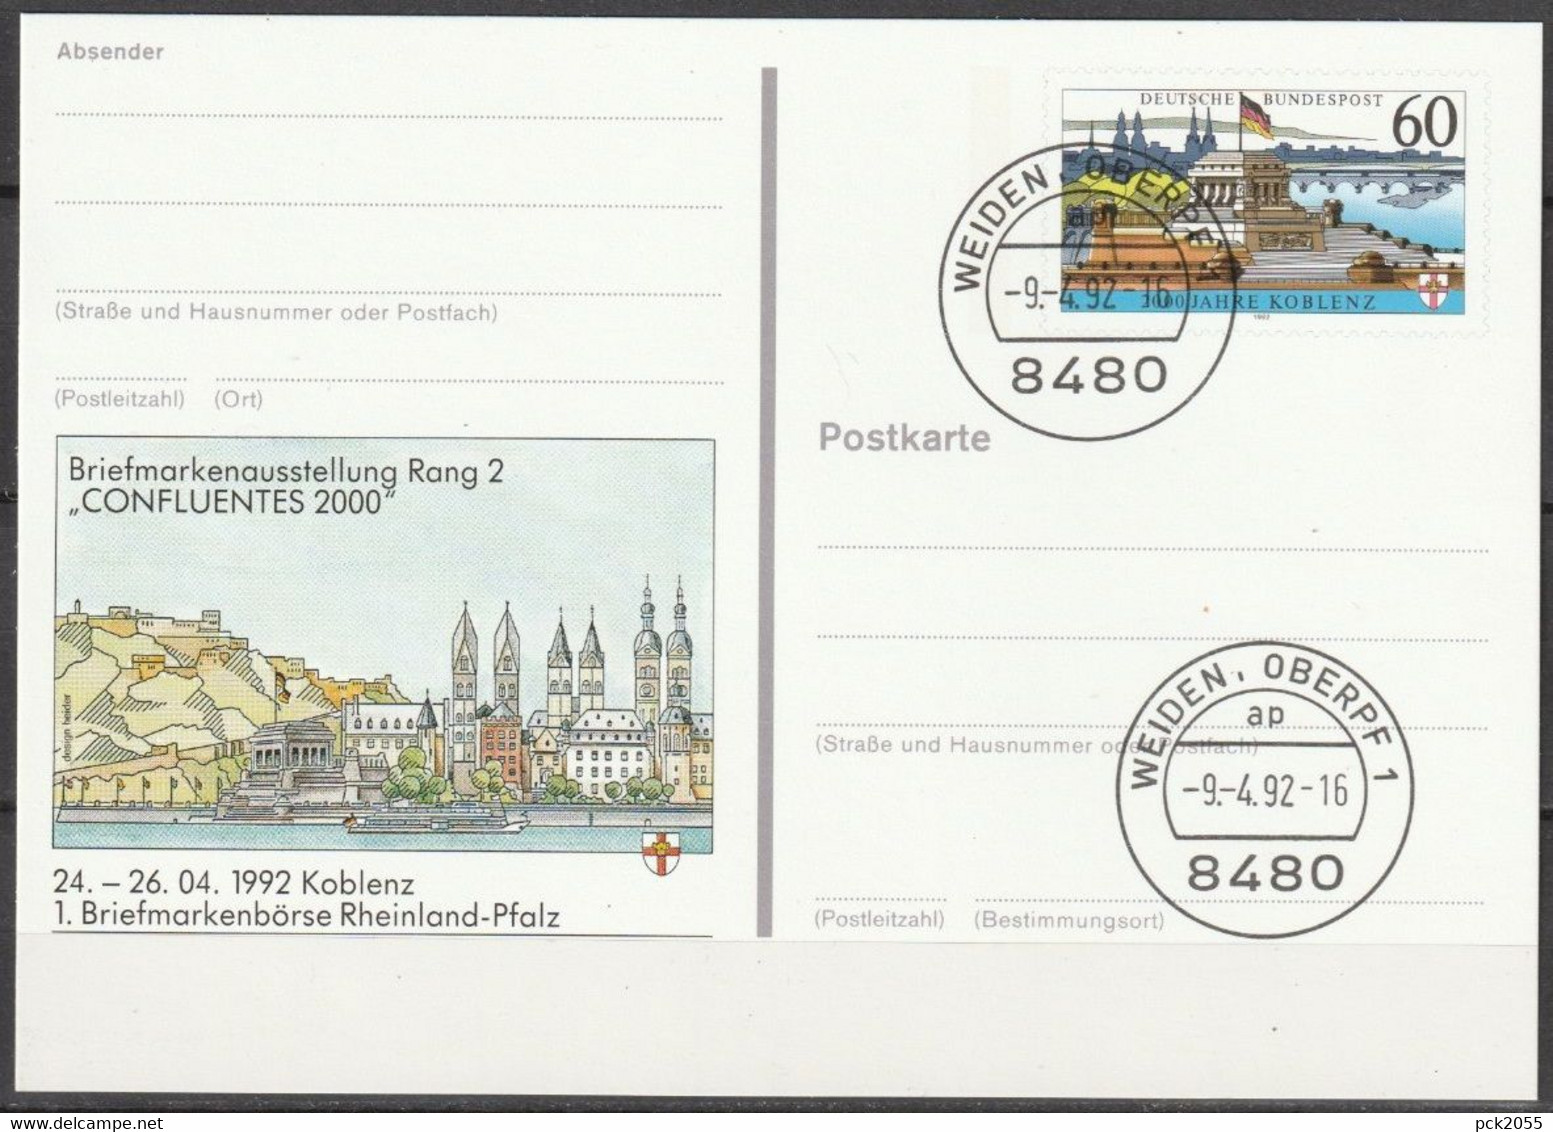 BRD Ganzsache1992 PSo26 Briefmarkenbörse Koblenz EST.9.4.92 WEIDEN OBERPF  (d3749)günstige Versandkosten - Postkarten - Gebraucht